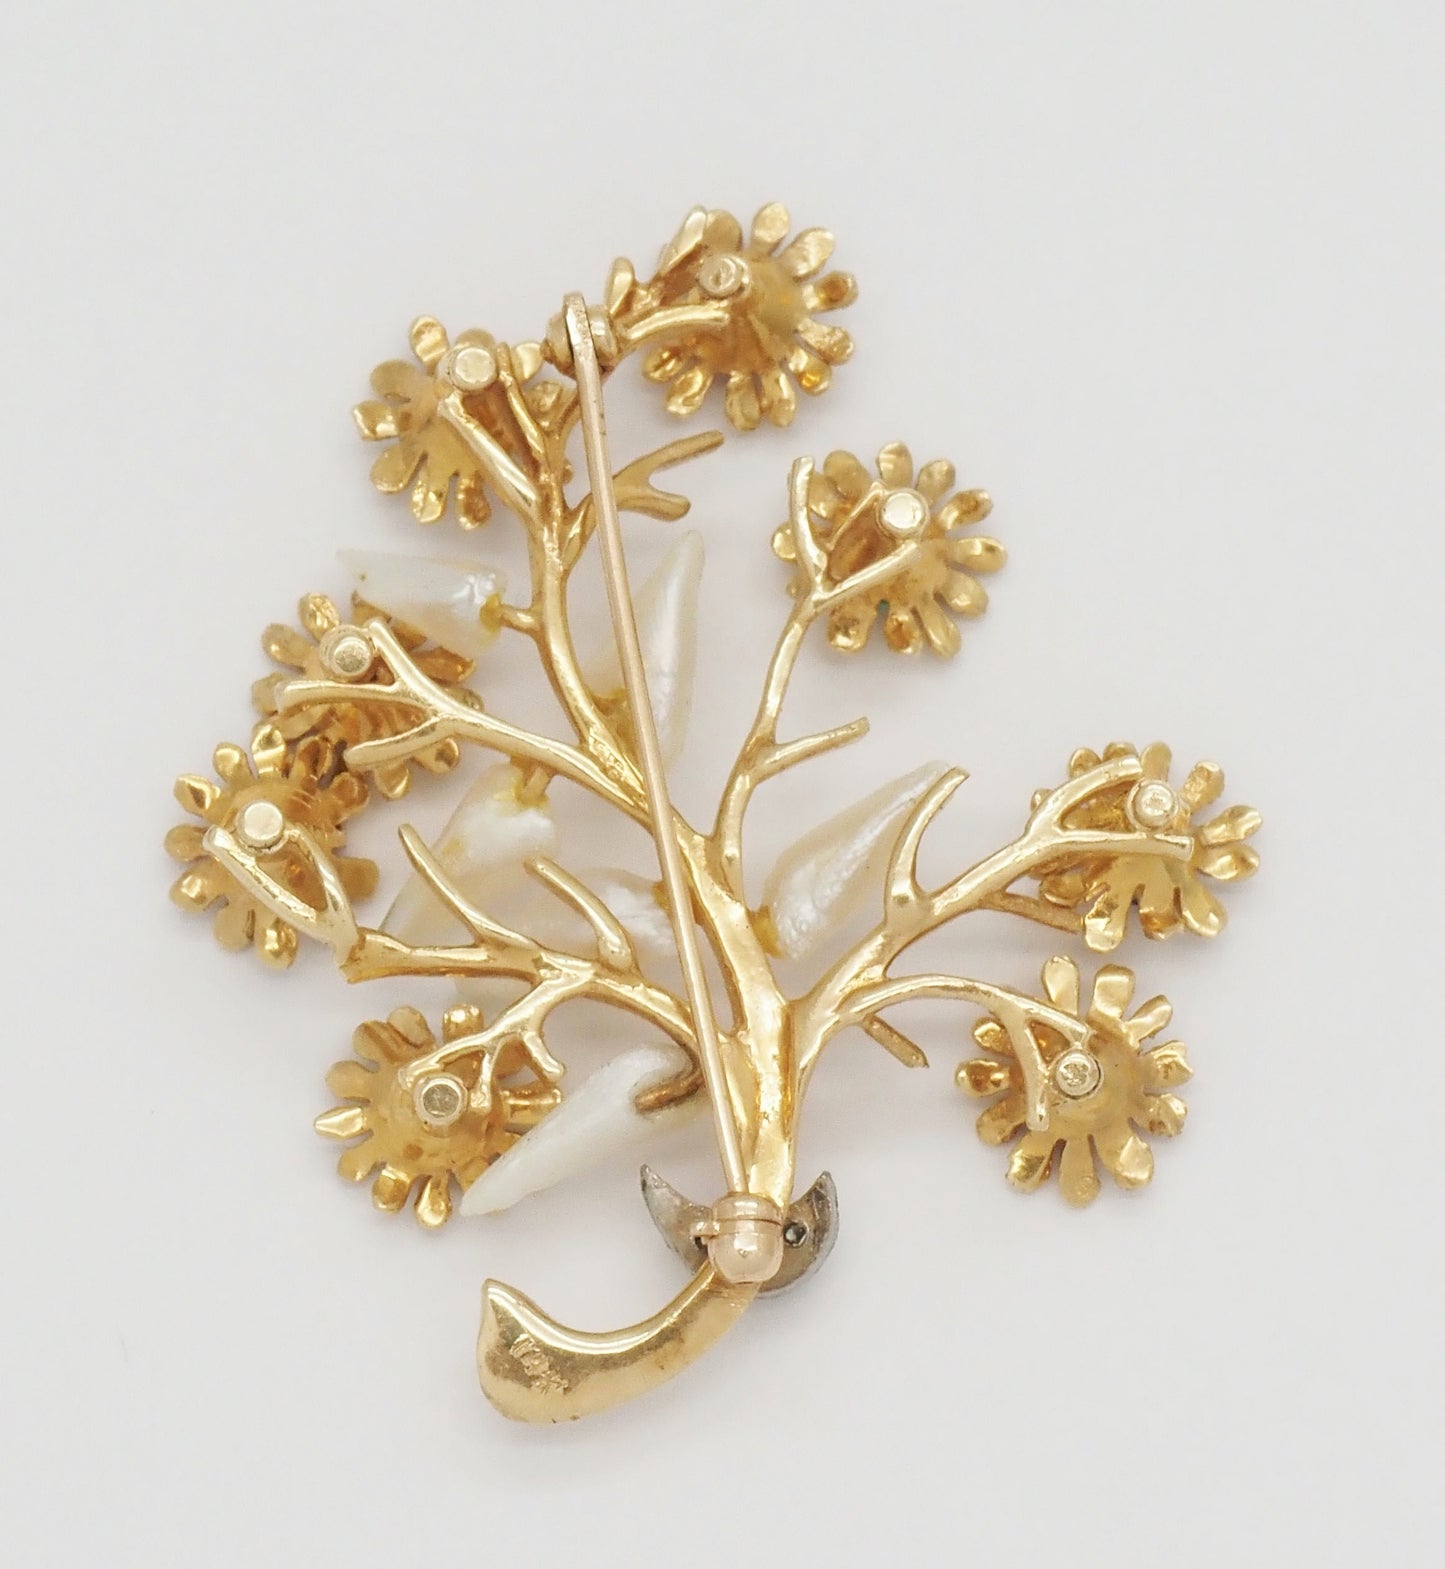 Vintage 14k Yellow Gold Branch & Flower Gemstone Brooch - 11.9g